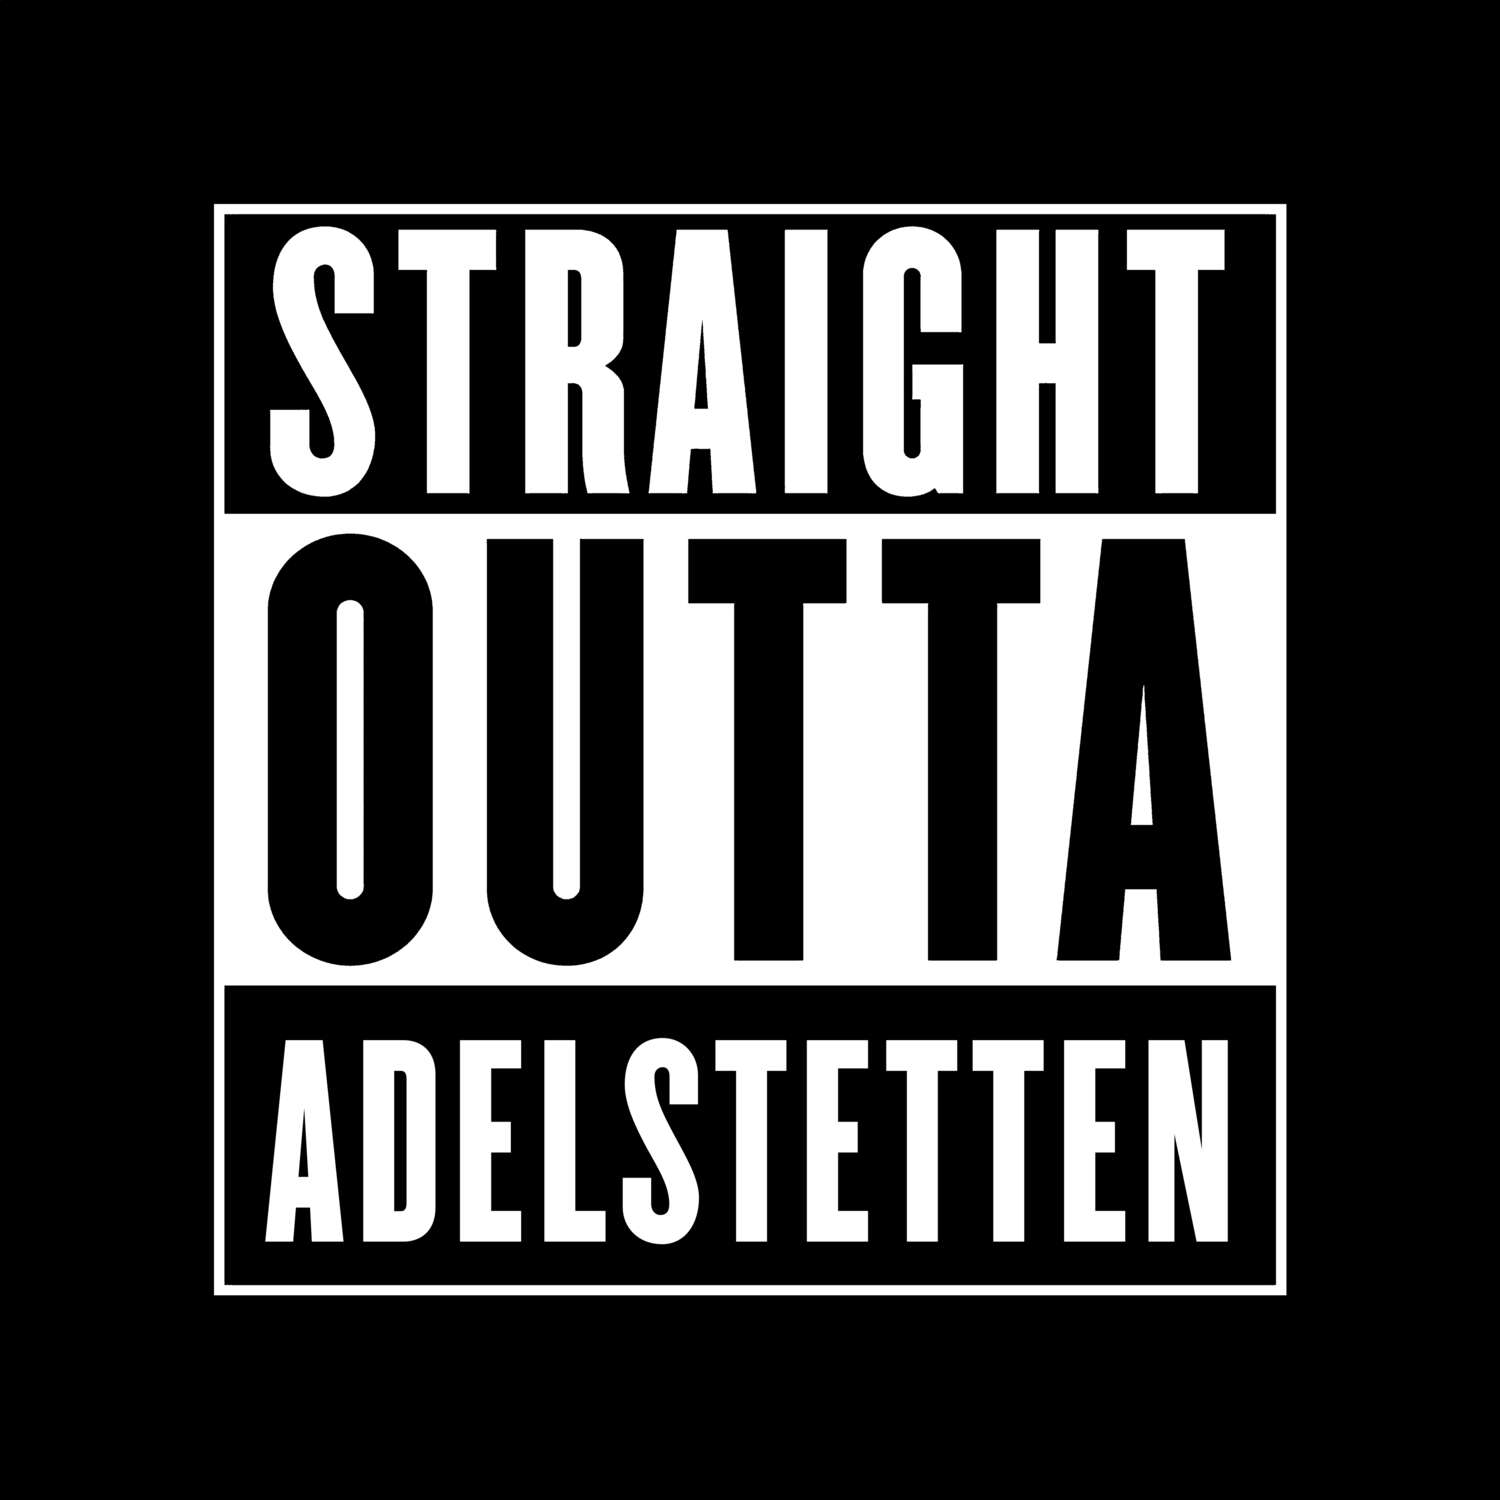 Adelstetten T-Shirt »Straight Outta«